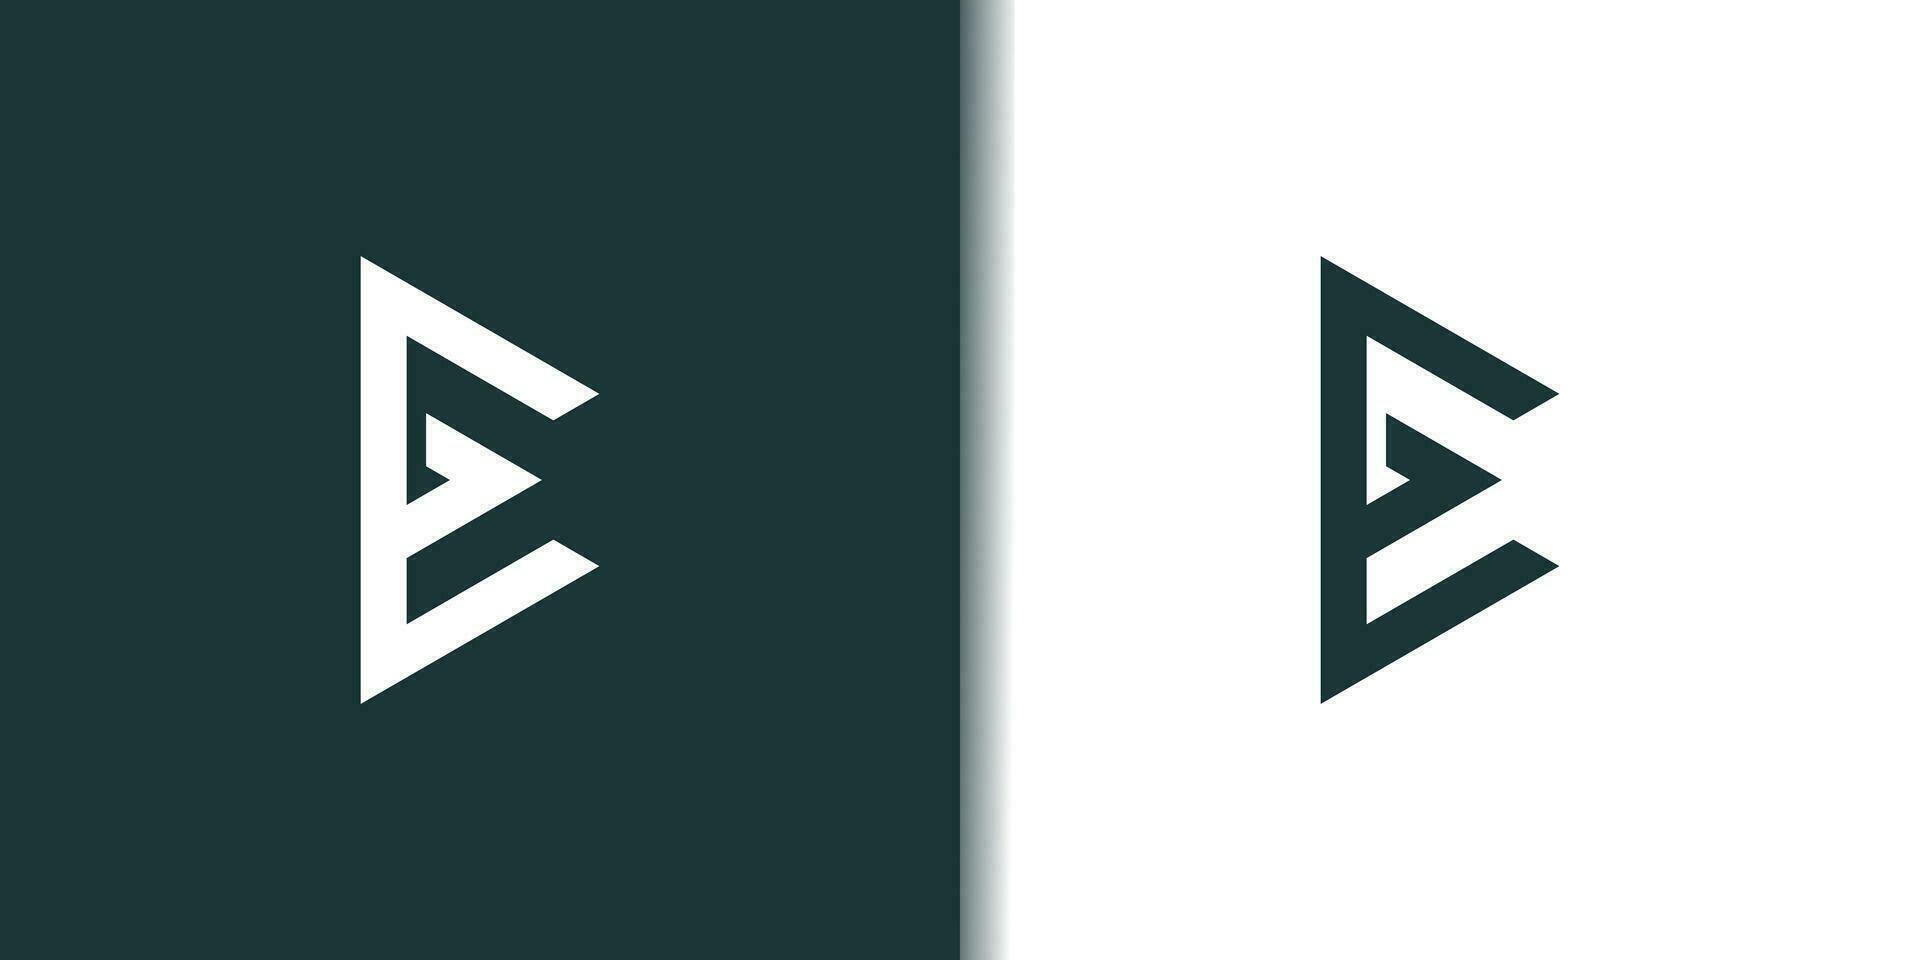 lettera e logo design elemento vettore con moderno concetto